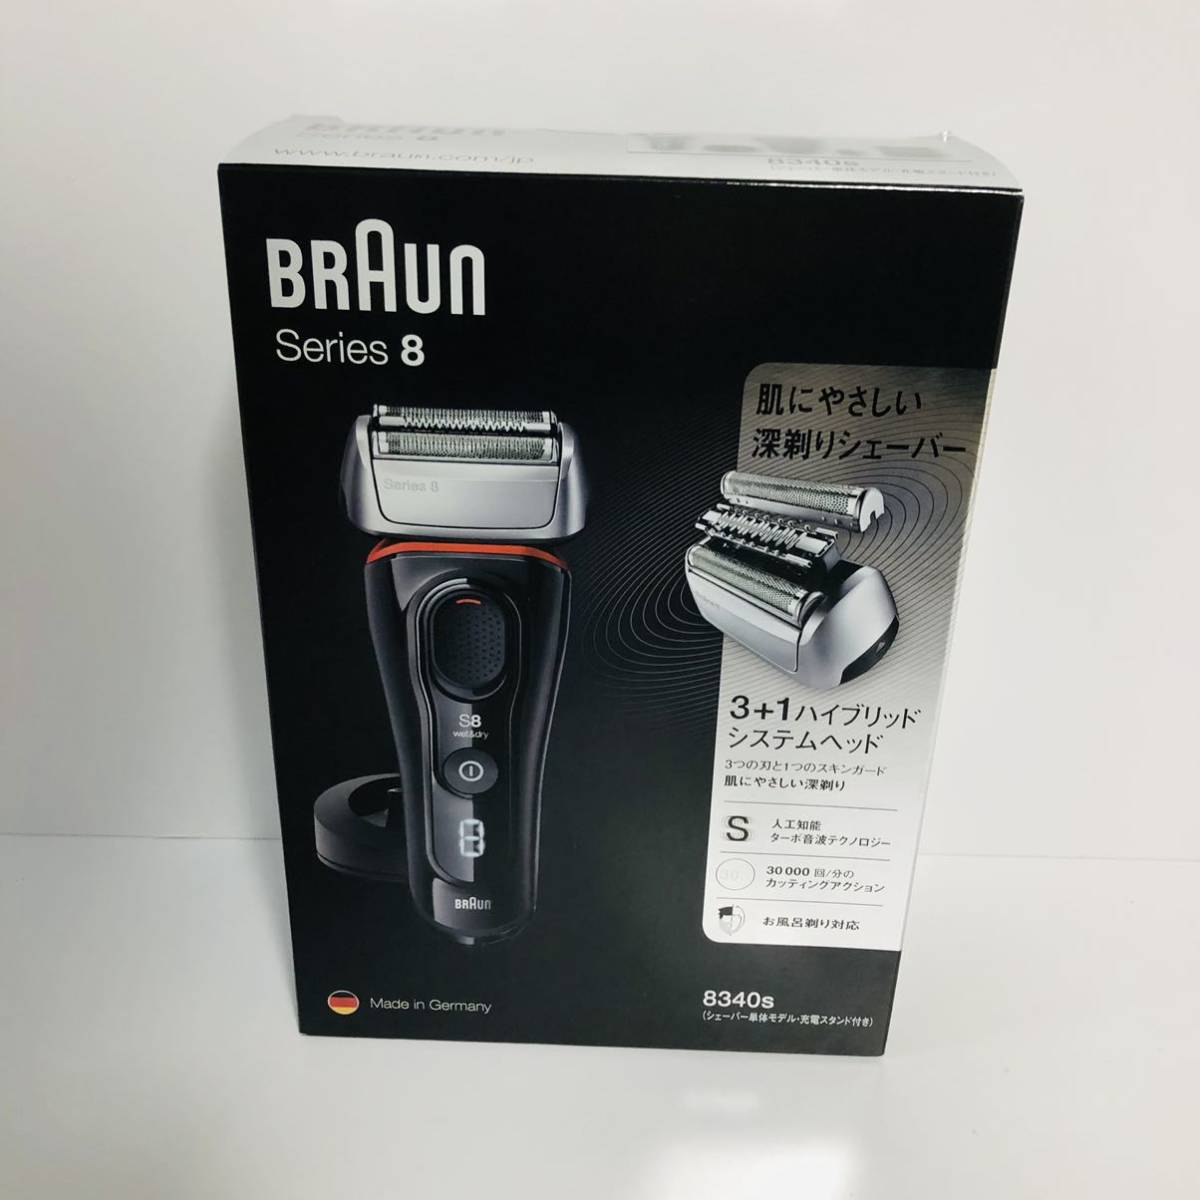 【未開封新品】BRAUN 電気シェーバー 髭剃り シリーズ8 8340s